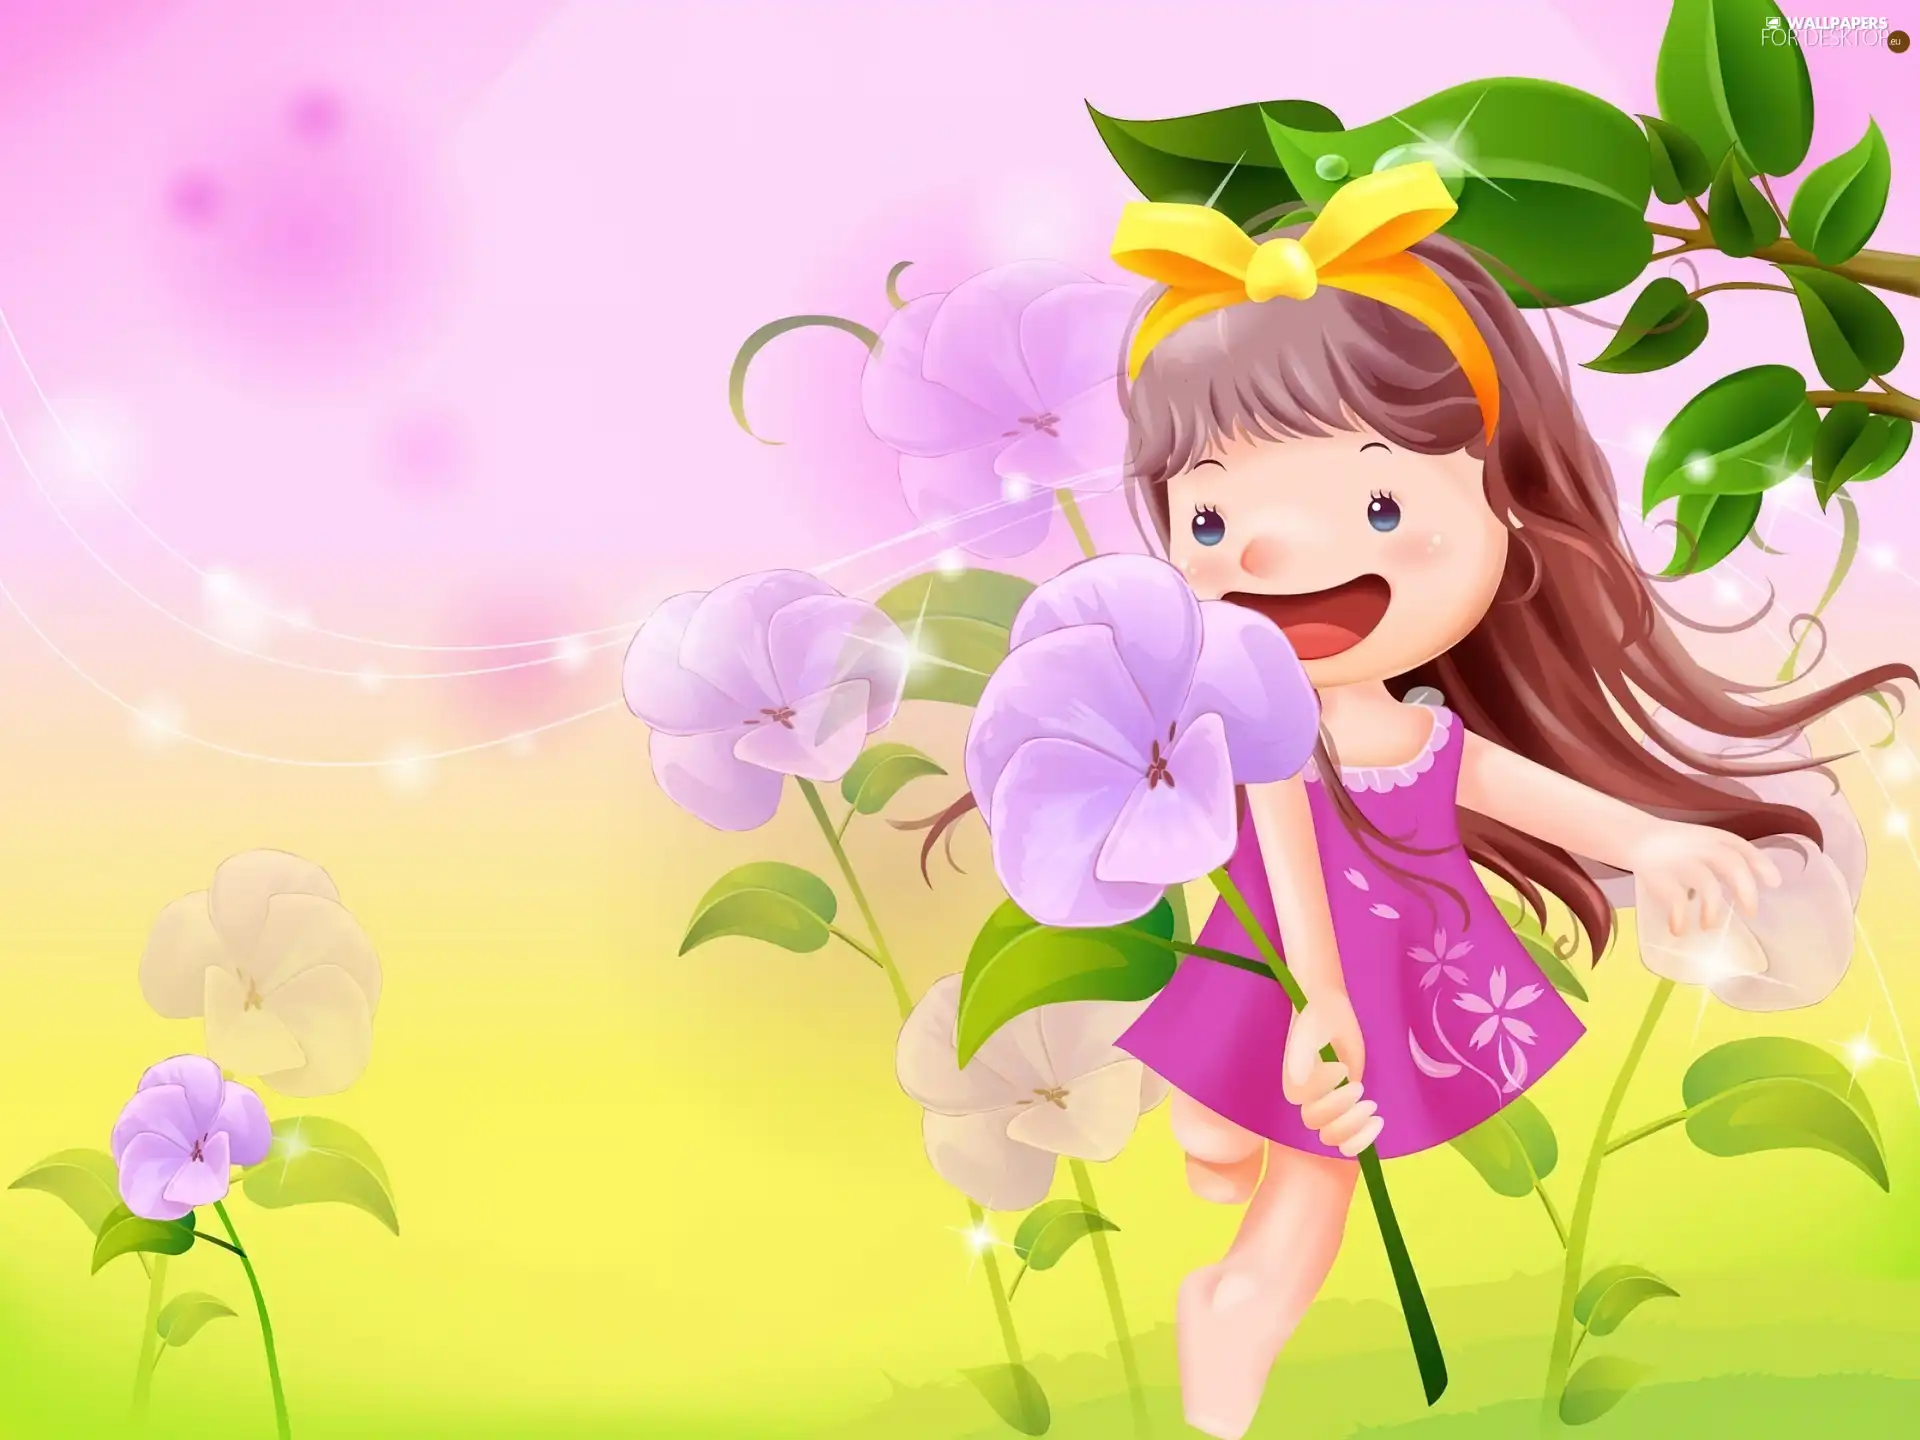 Kid, Flowers, joy, Meadow